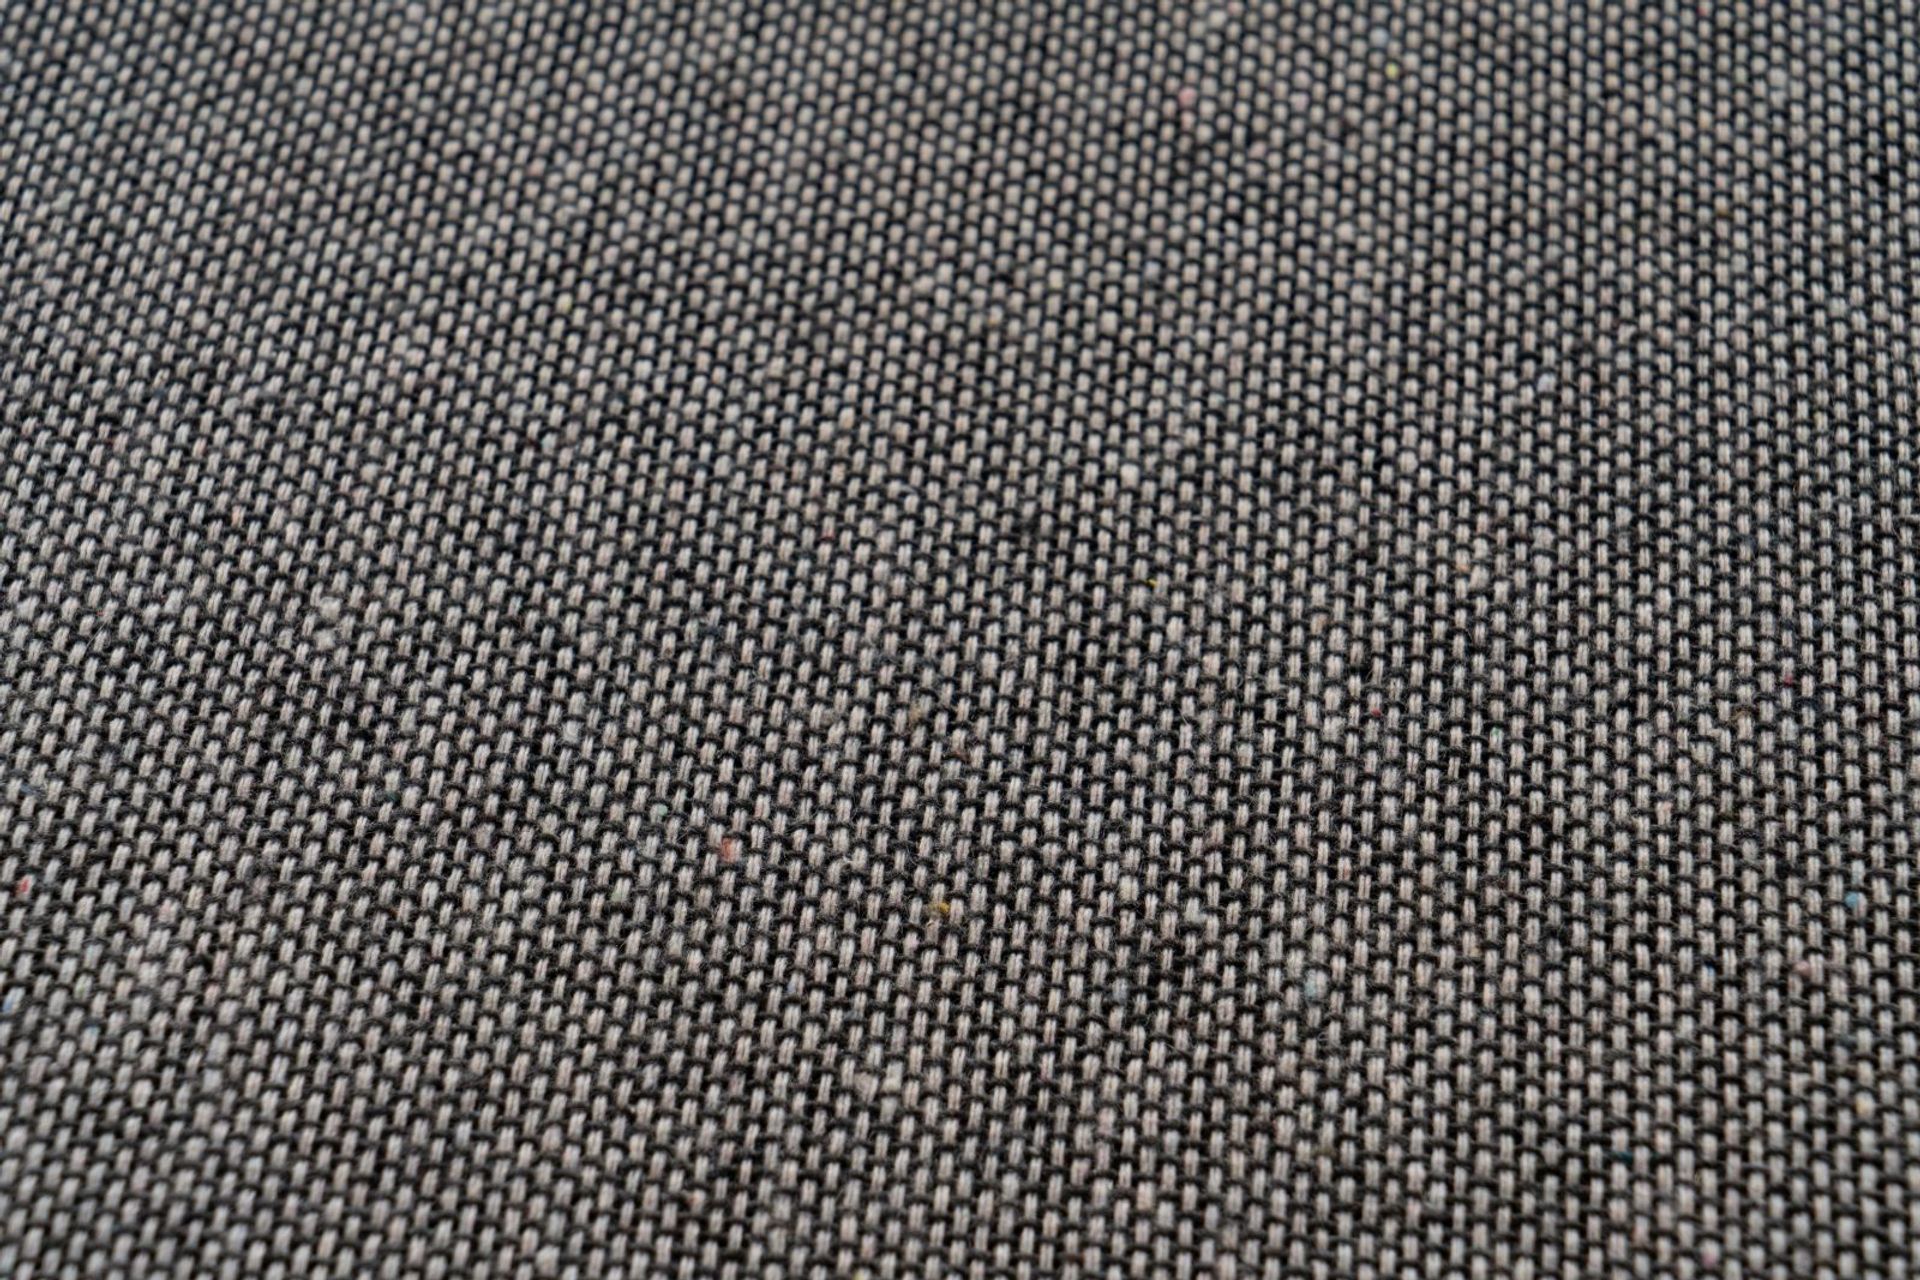 Teppich Peron 100 Grau / Taupe 80 cm x 150 cm